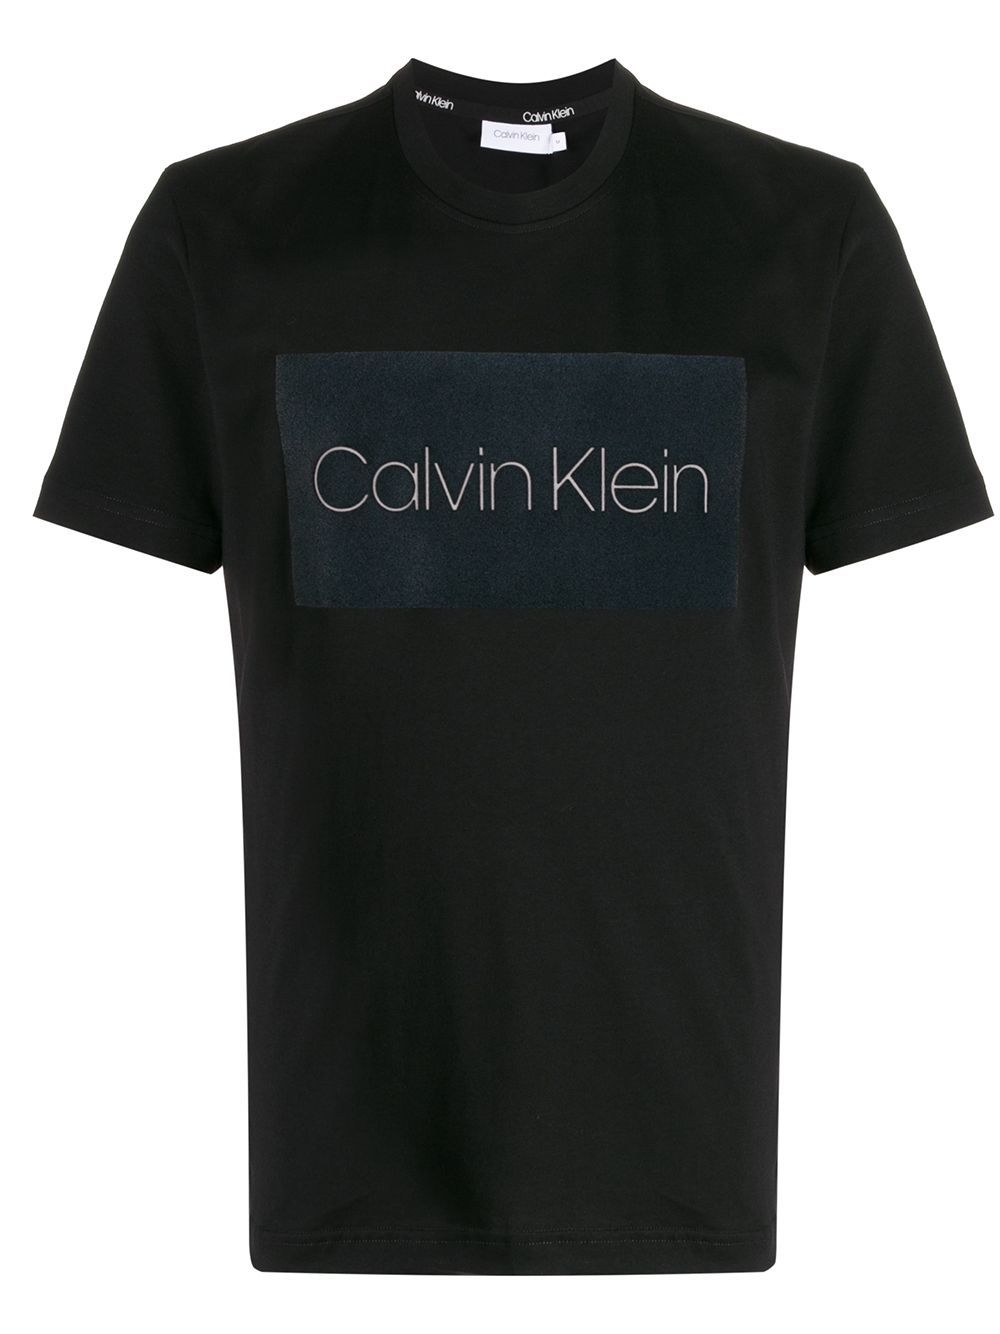 фото Calvin klein футболка с логотипом